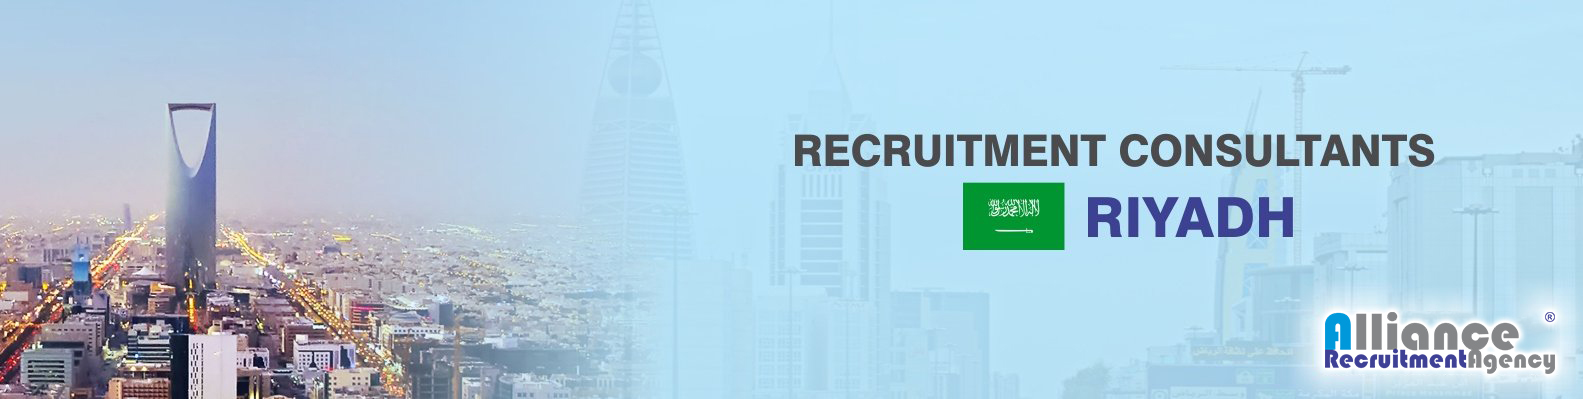 recruitment agency riyadh